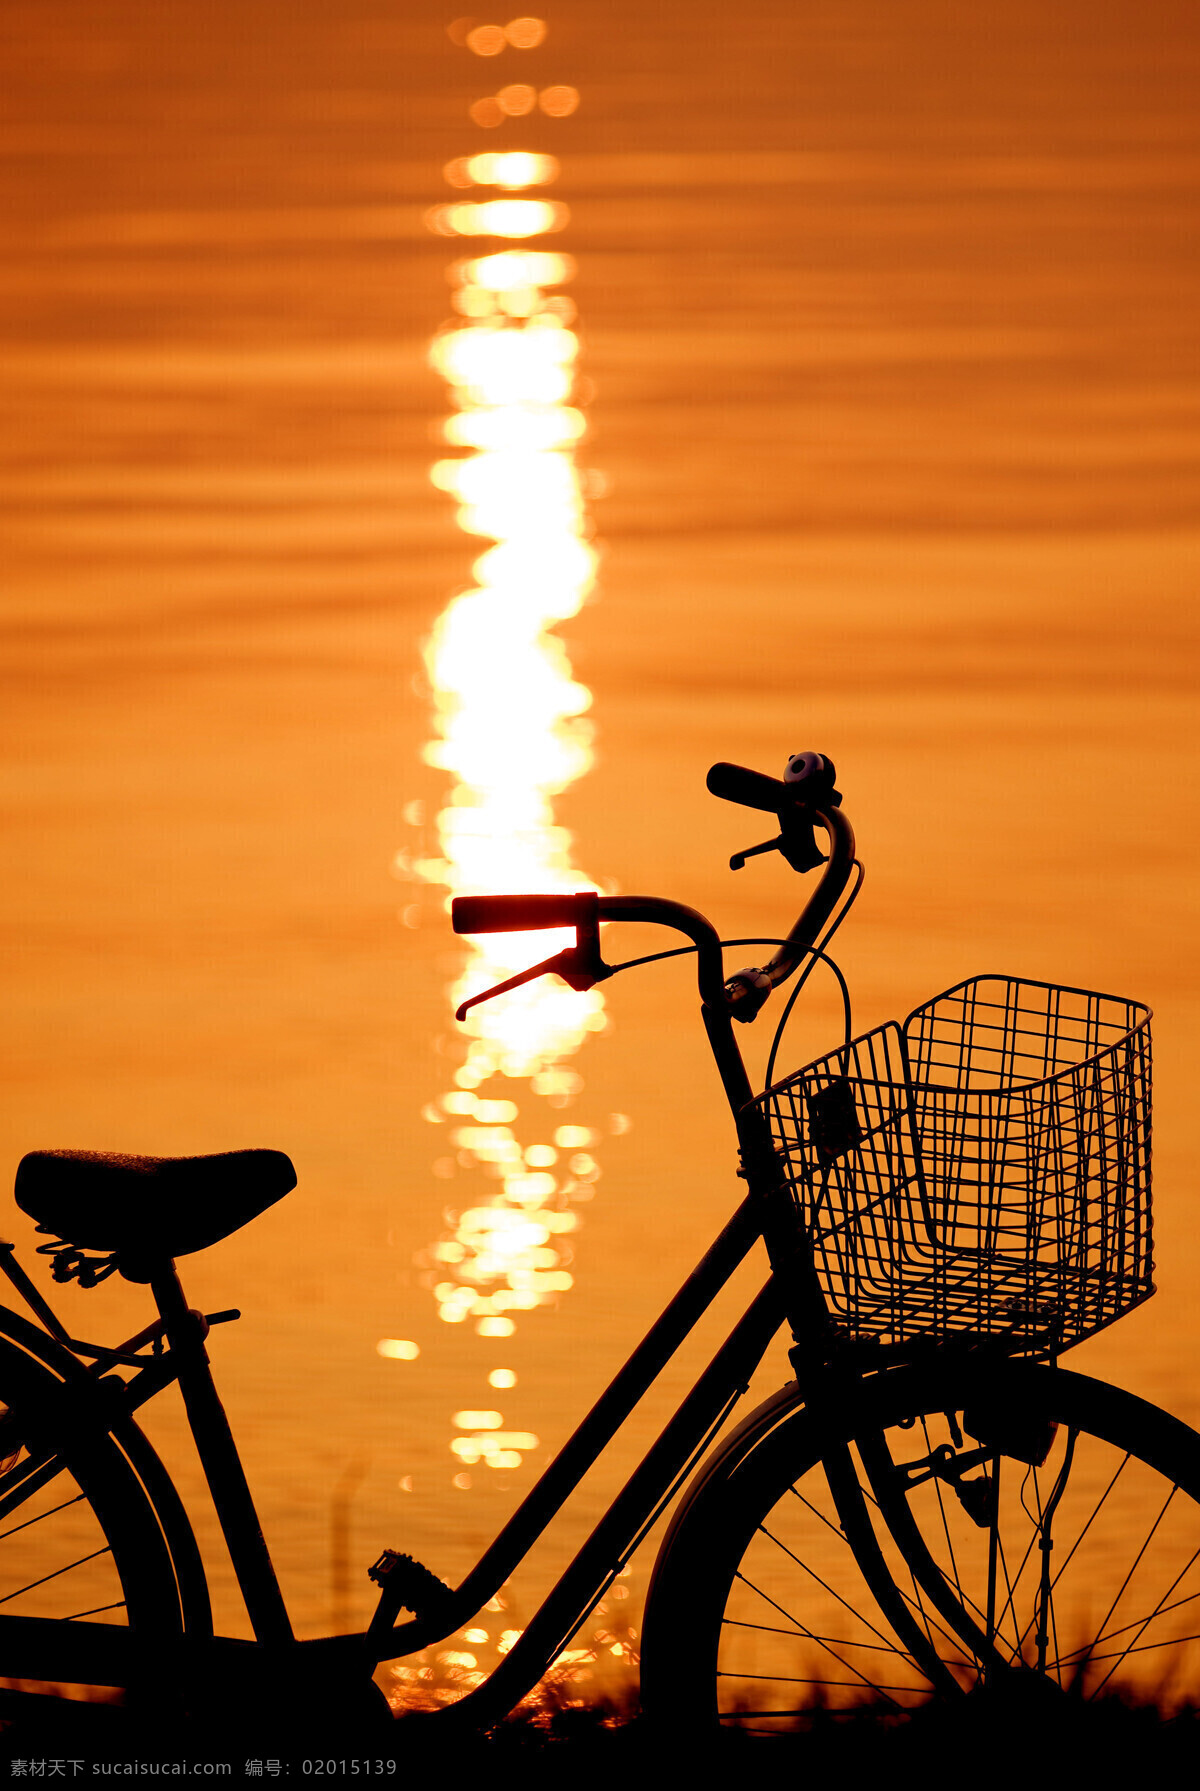 夕阳 下 自行车 海边 户外 生活人物 人物图库 人物图片